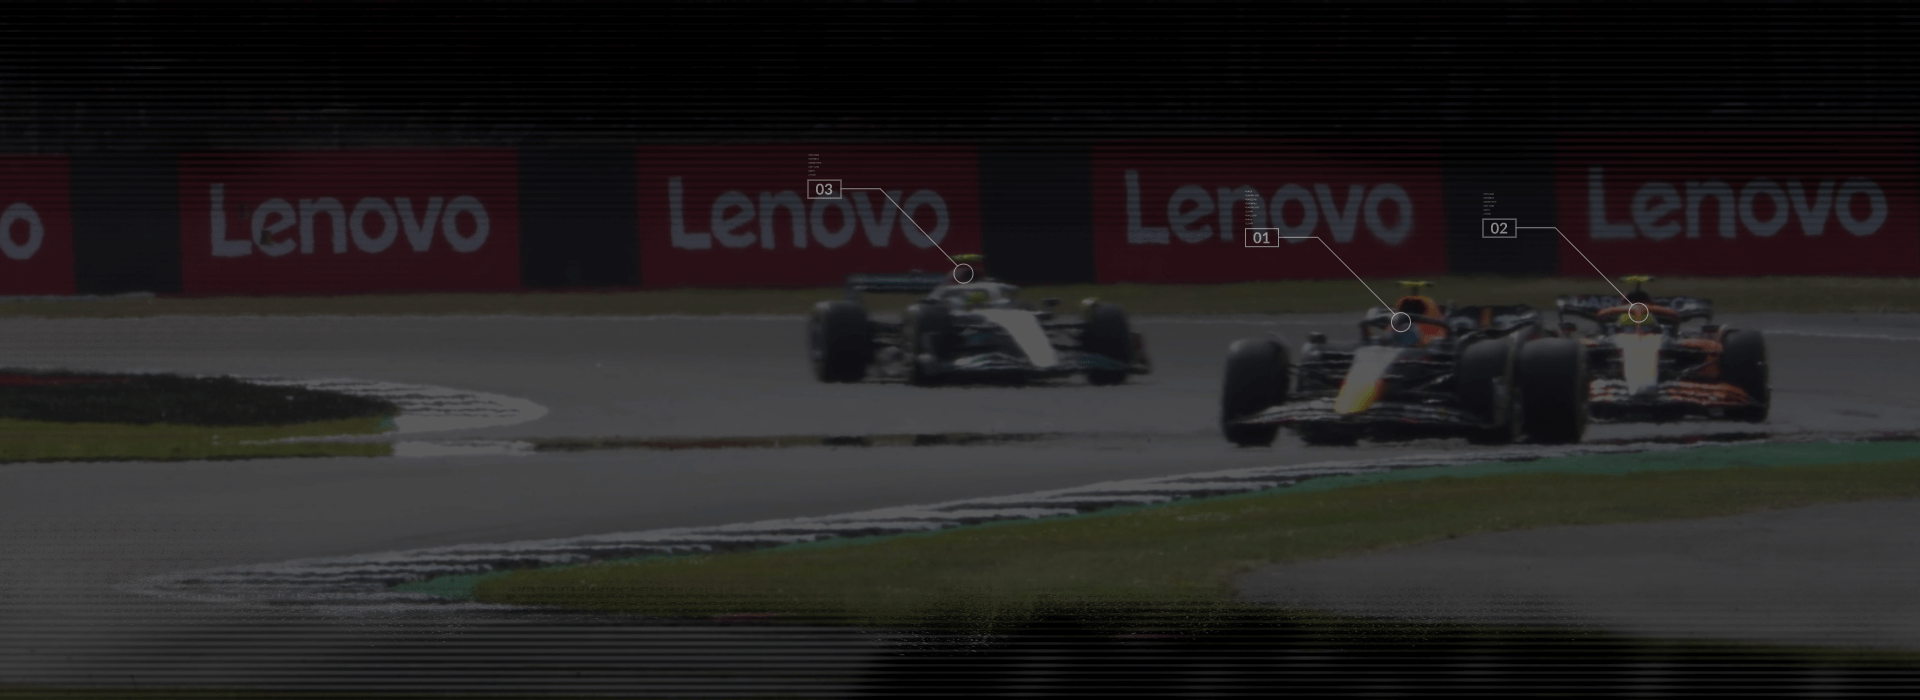 3 F1-bolides op een racebaan met Lenovo-banners op de achtergrond